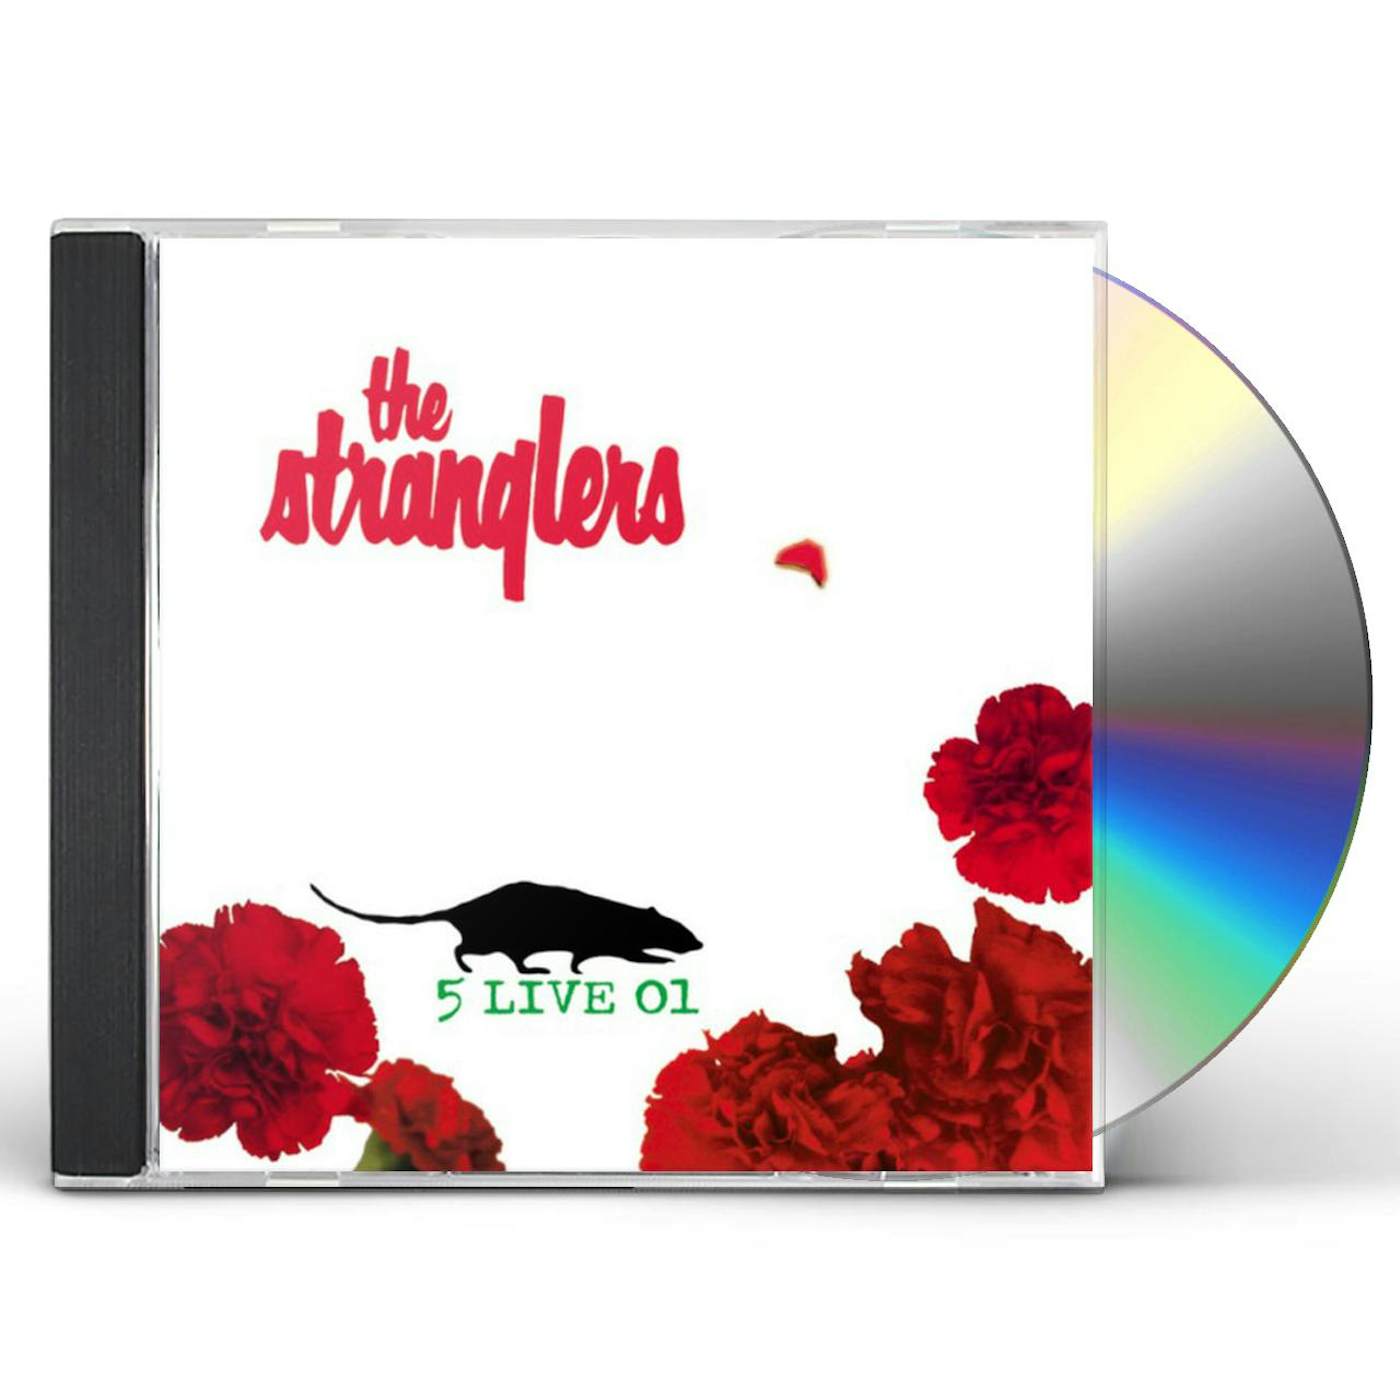 The Stranglers 5 LIVE 01 CD